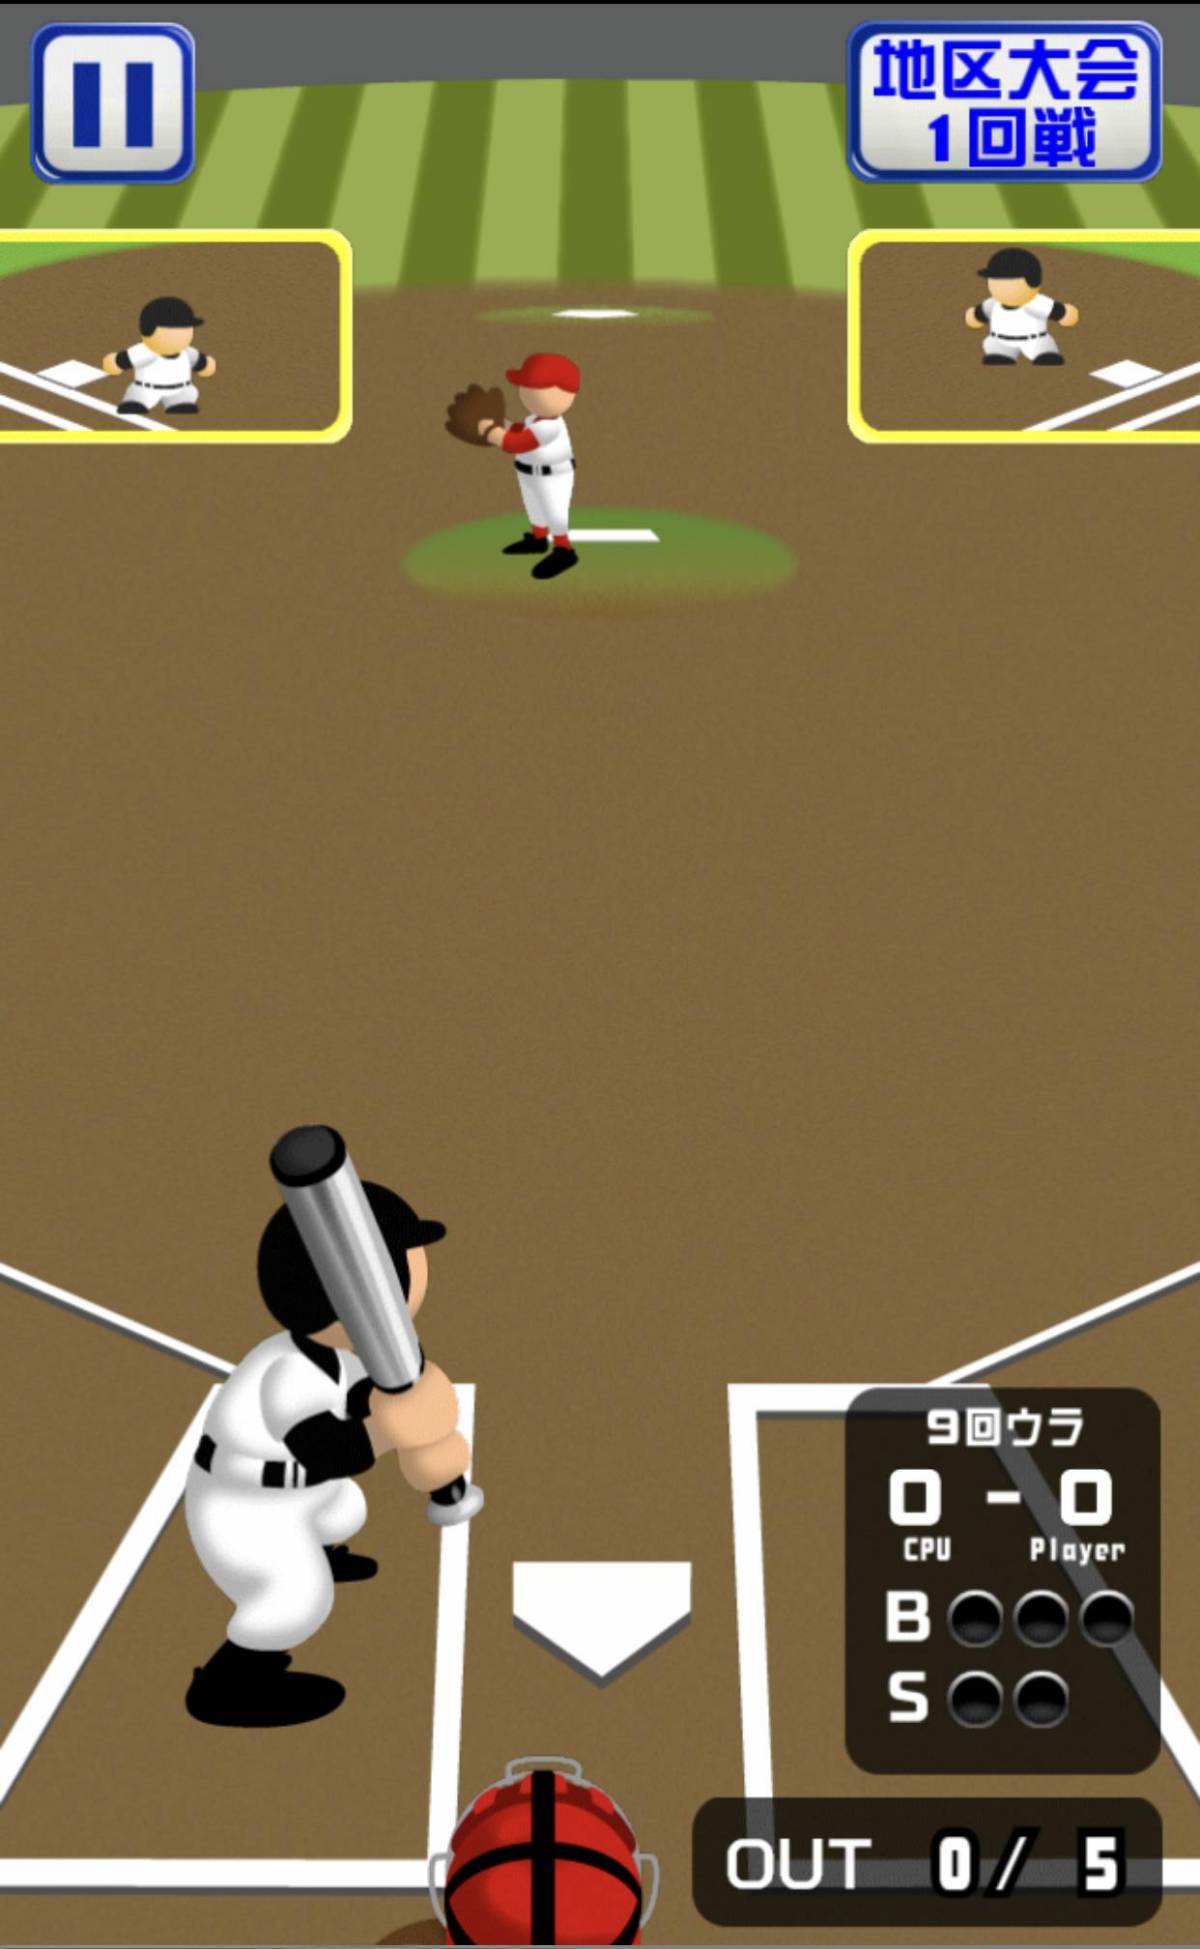 スマホで熱闘開幕 高校野球がテーマのおすすめゲームアプリ5選の画像 8枚目 Appliv Topics